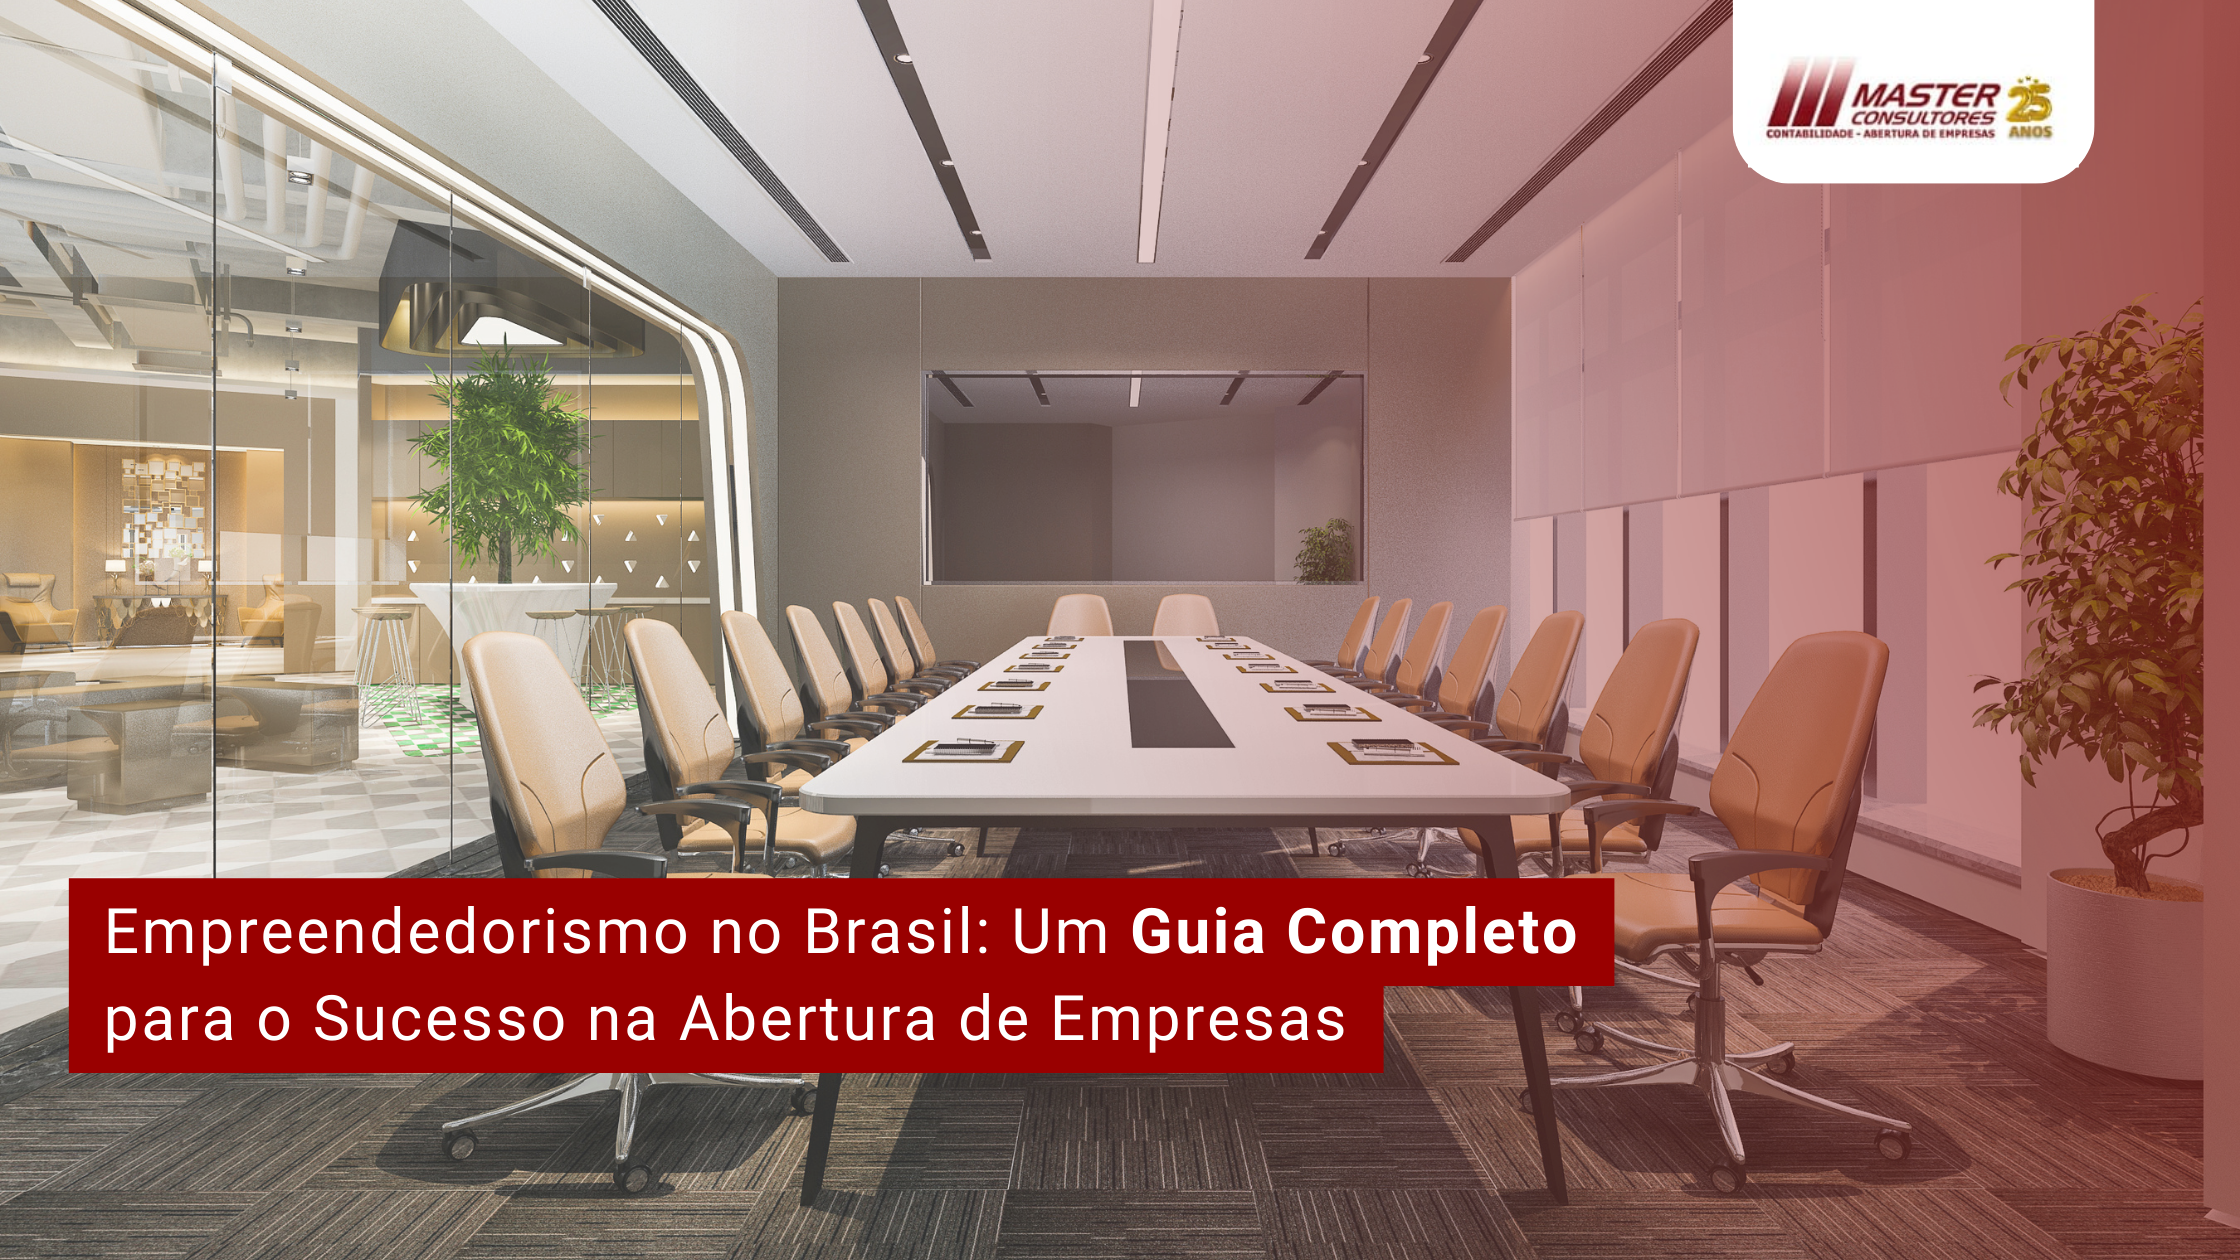 Empreendedorismo No Brasil Um Guia Completo Para O Sucesso Na Abertura De Empresas - Contabilidade na lapa - SP | Master Consultores